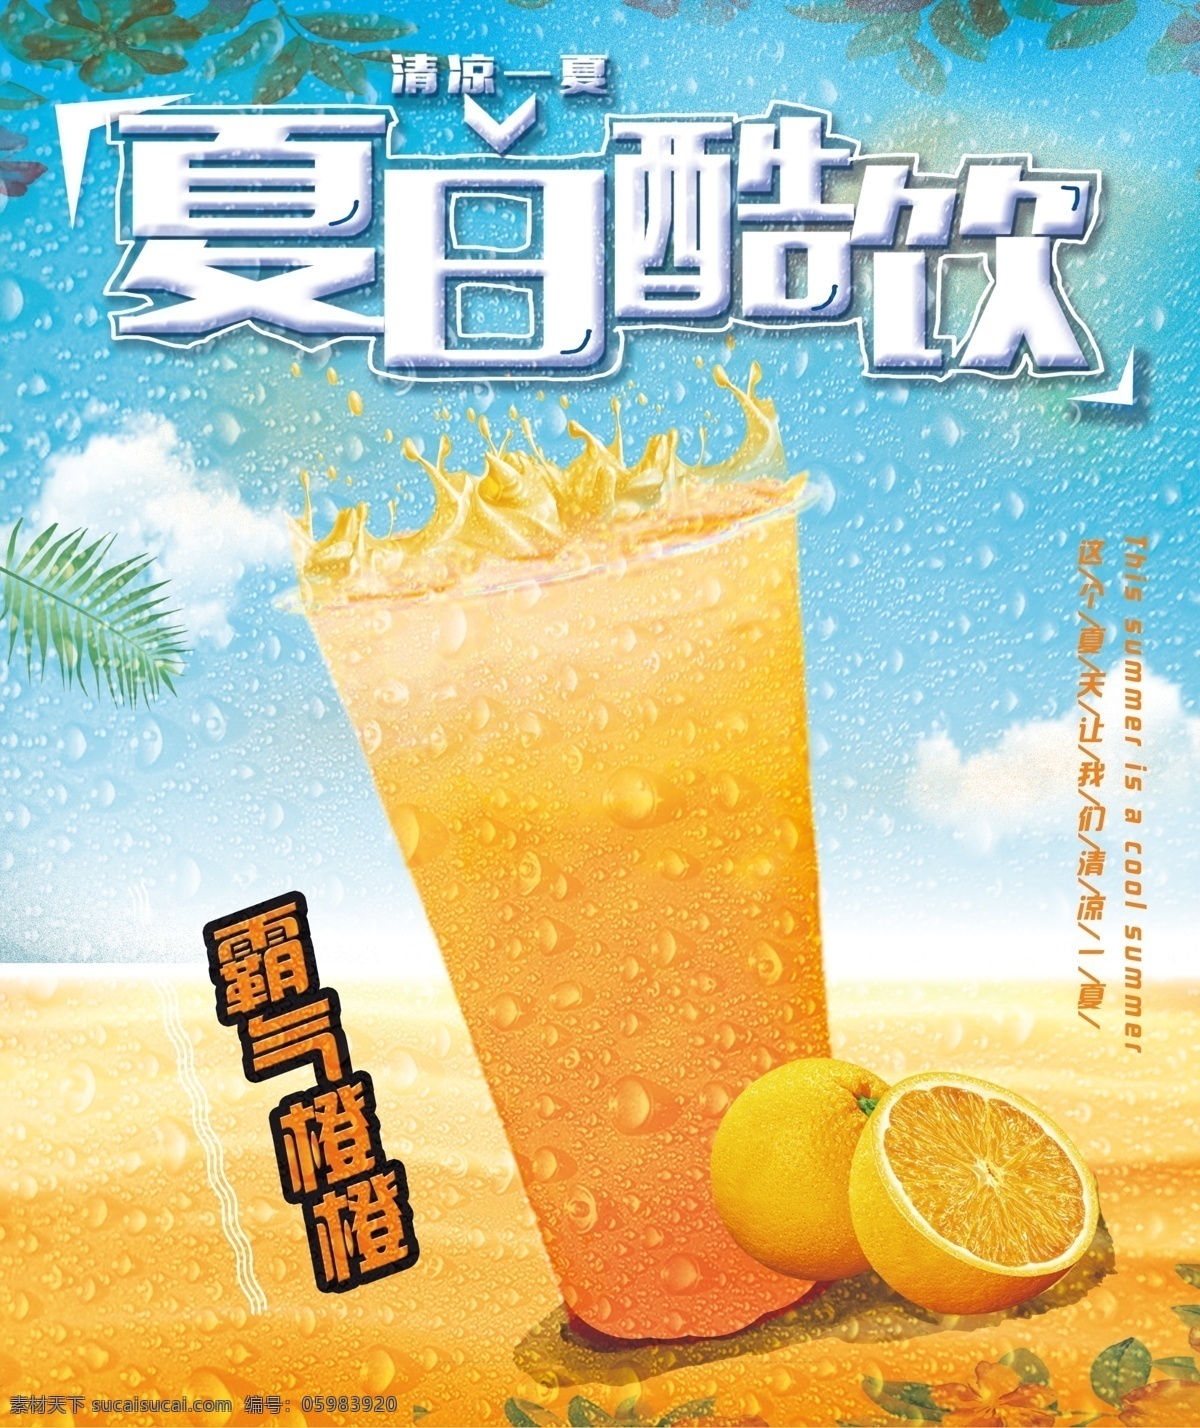 饮品海报 夏日酷饮 霸气橙汁 芒果汁 橙汁 霸气橙橙 满杯西柚 海报 奶茶海报 创意海报